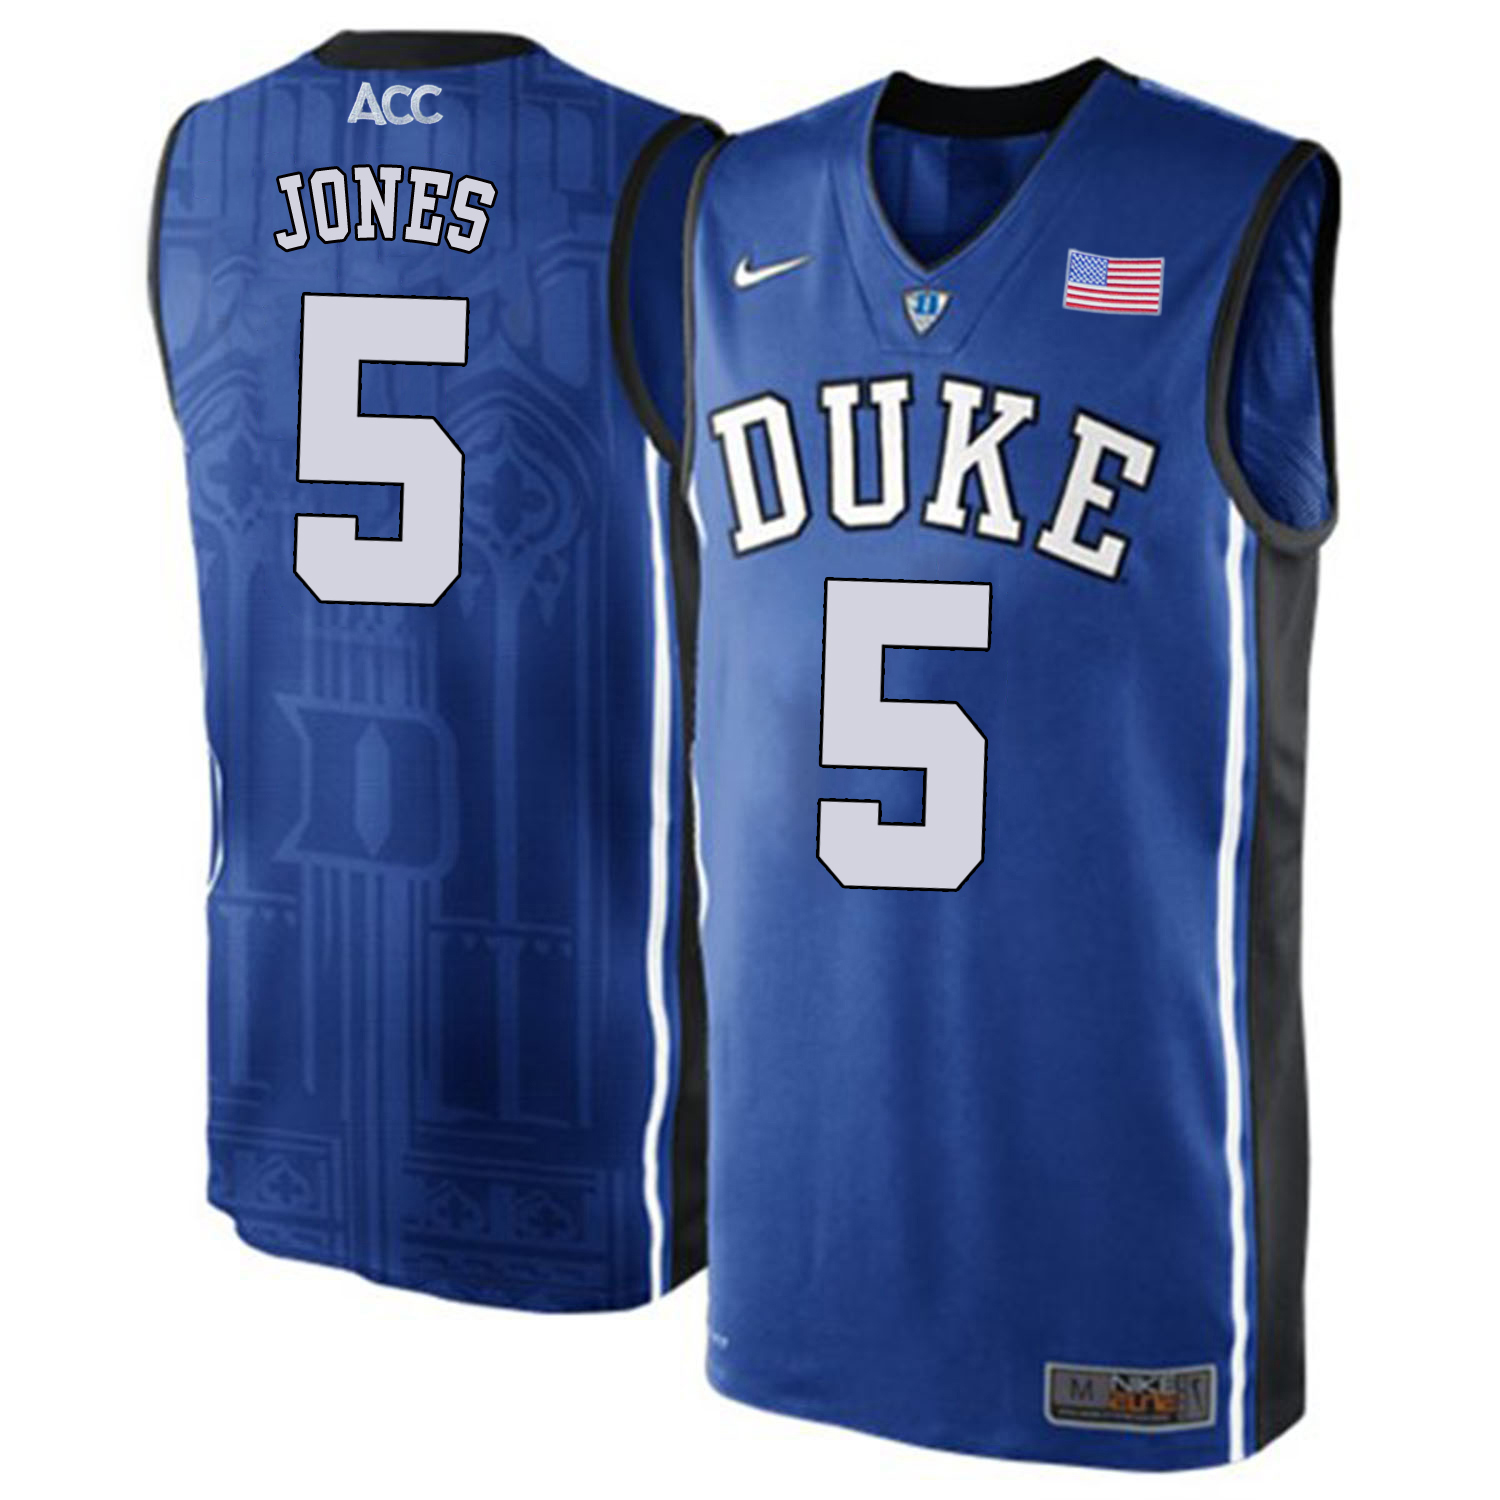 Duke Blue Devils 5 Tyus Jones Blue College Basketball Elite Jersey